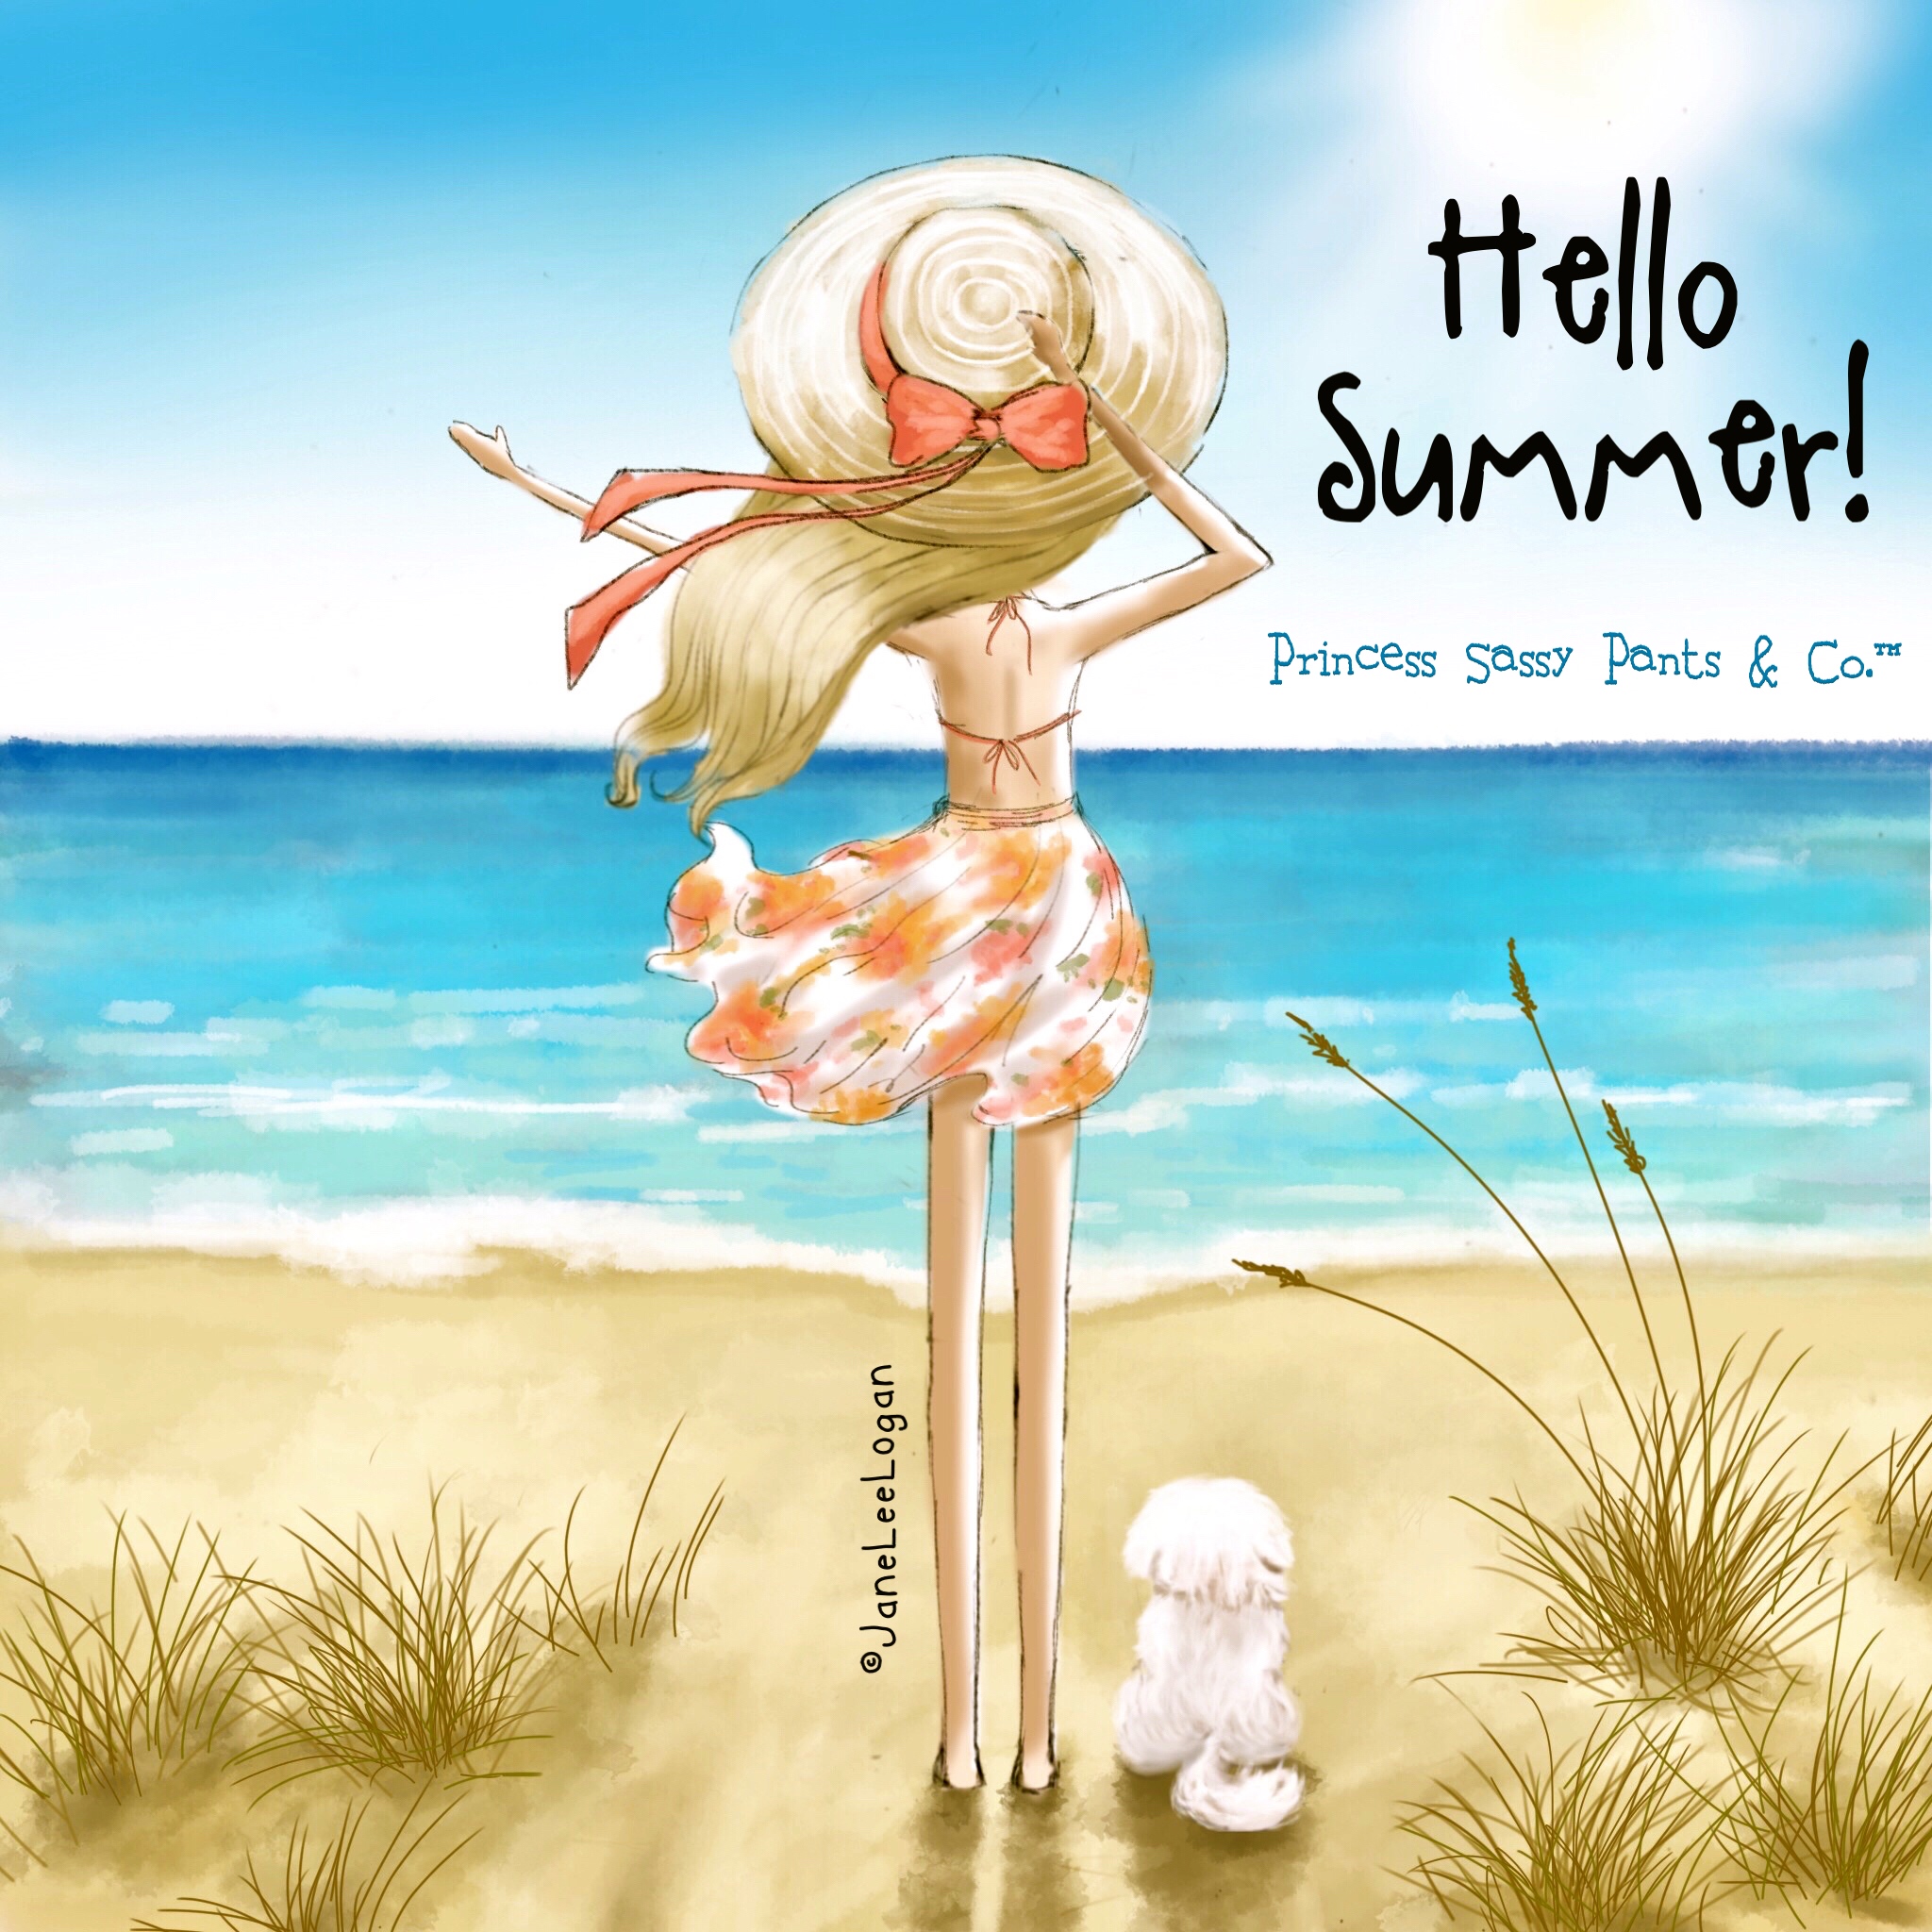 Hello Summer! | Princess Sassy Pants & Co.™